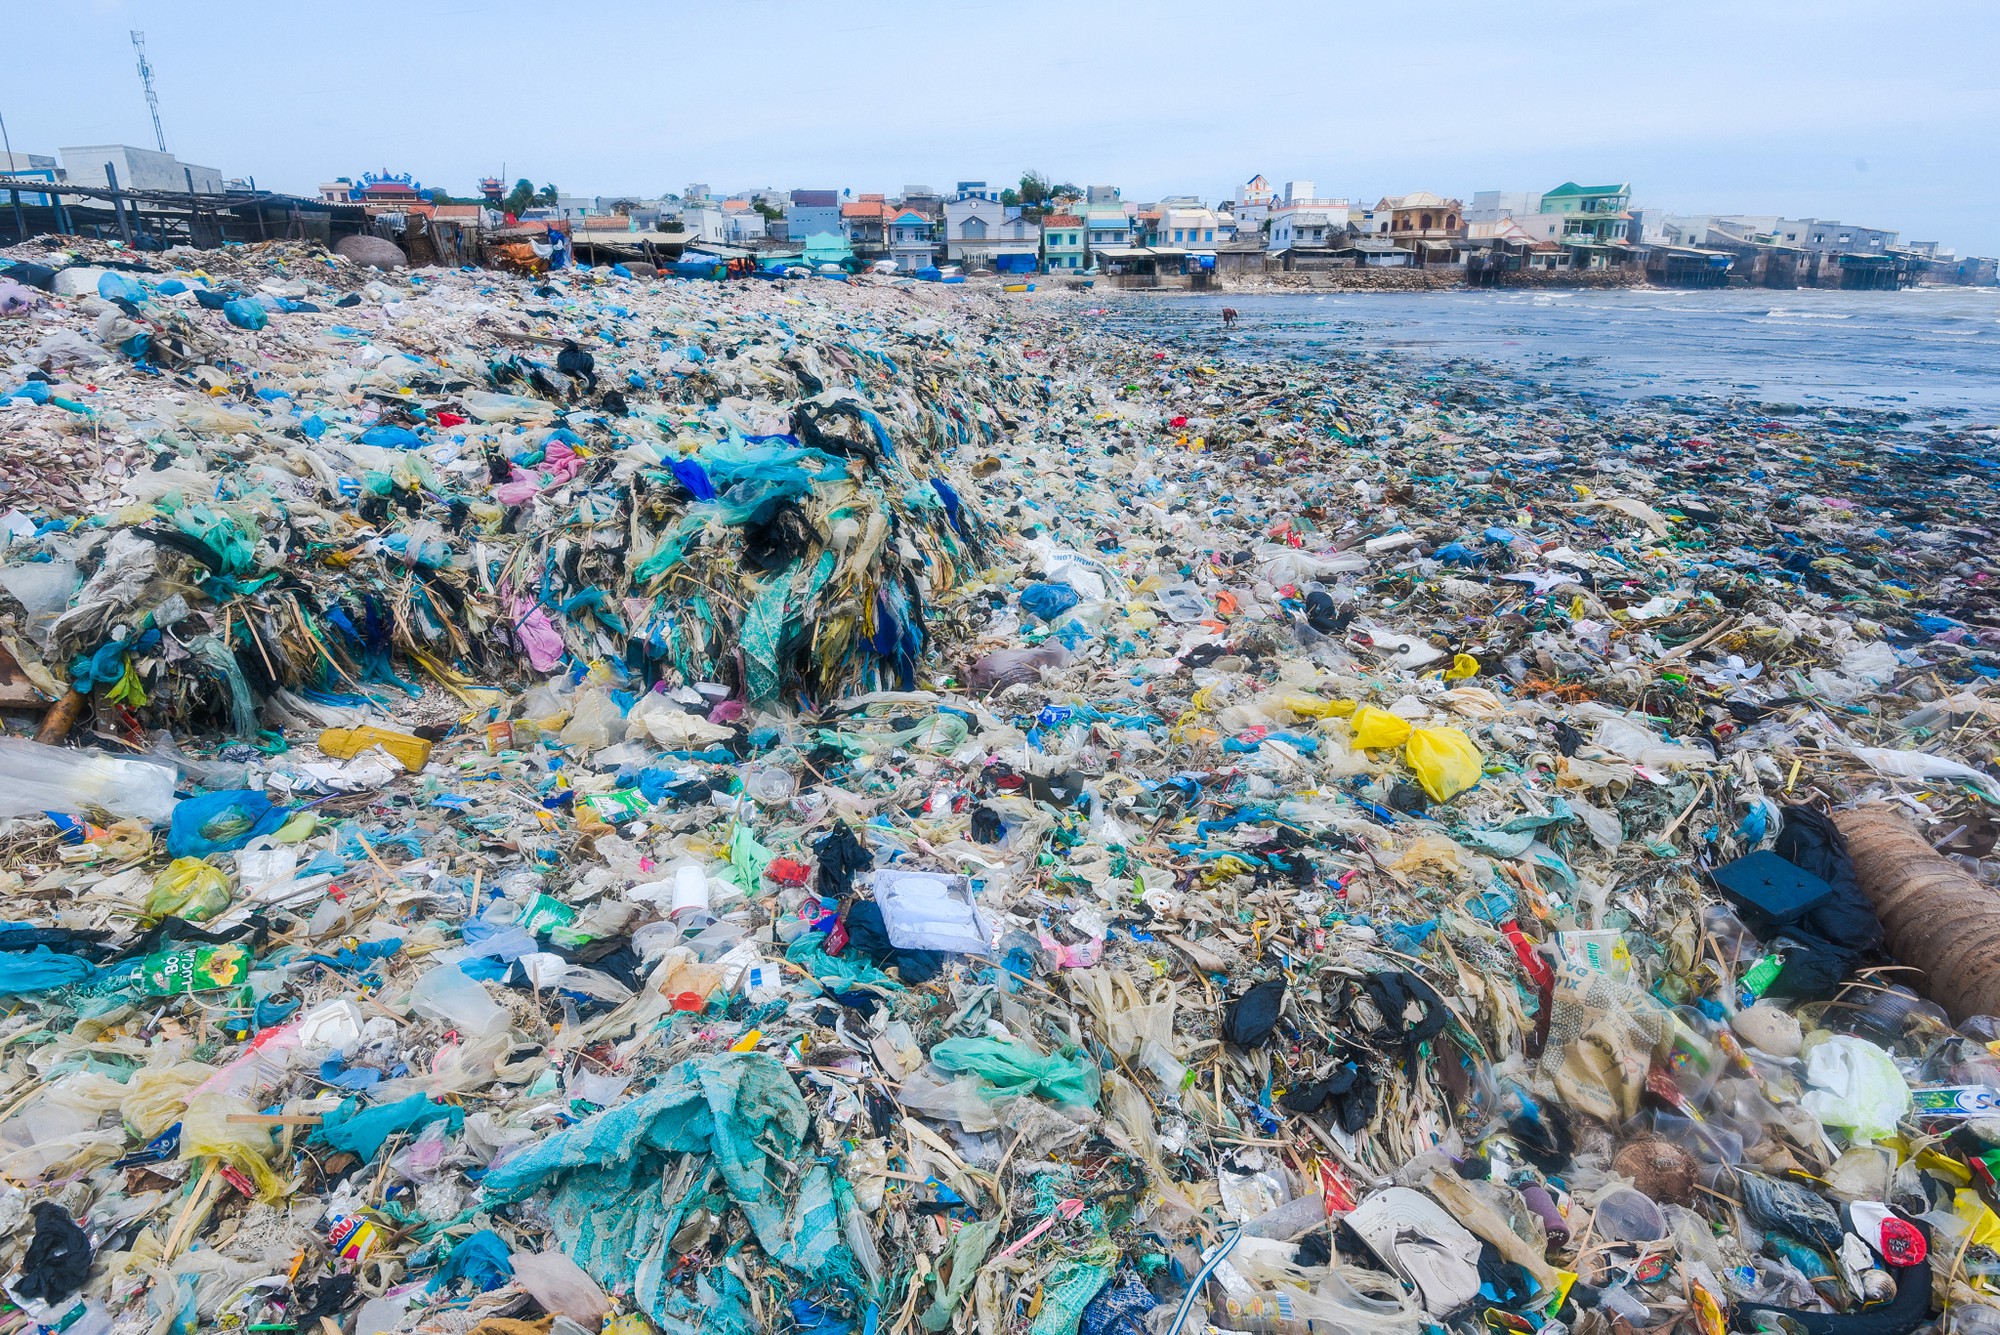 Phân loại rác thải: Phân loại rác thải giúp giảm thiểu lượng rác thải phải xử lý và tăng hiệu quả trong việc tái chế. Hãy cùng xem hình ảnh về các hệ thống phân loại rác thải khác nhau trên thế giới và cách chúng giúp bảo vệ môi trường.